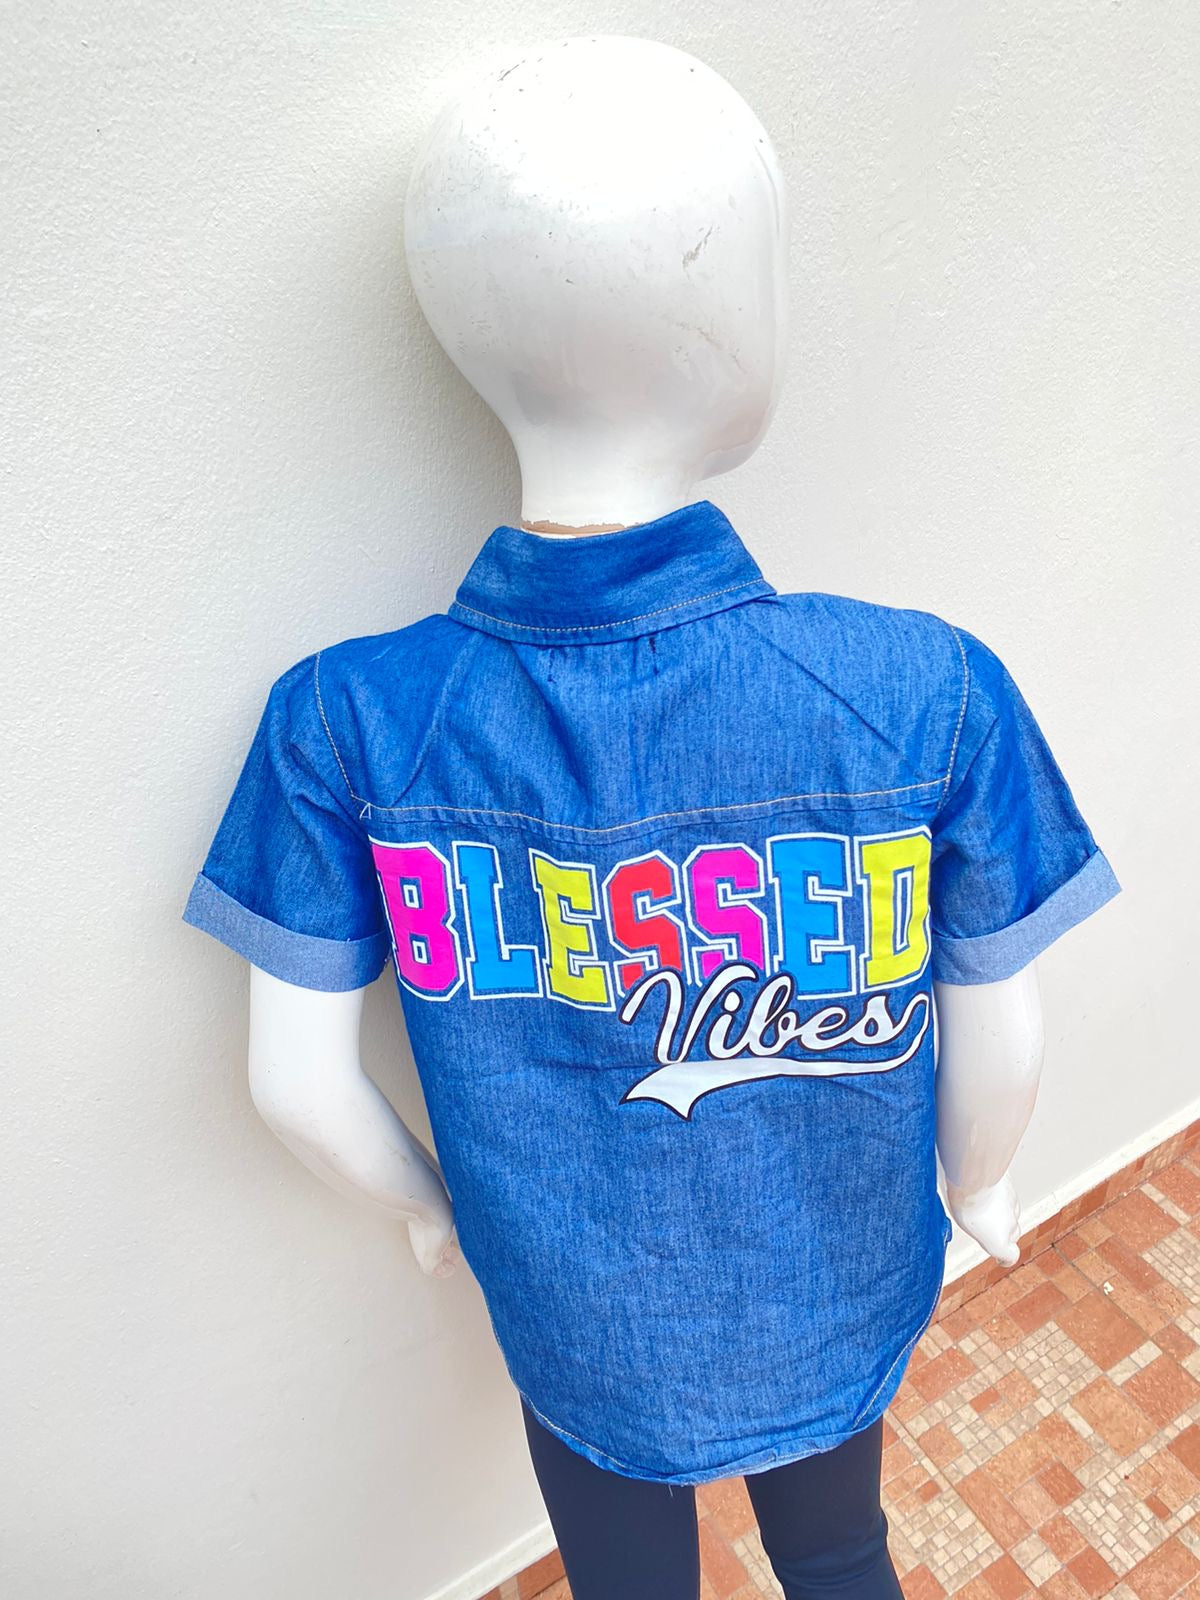 Camisa GIRLS original Jean con letras BLESSED VIBES ( vibras benditas ) en colores rosado,azul, amarillo y rojo.